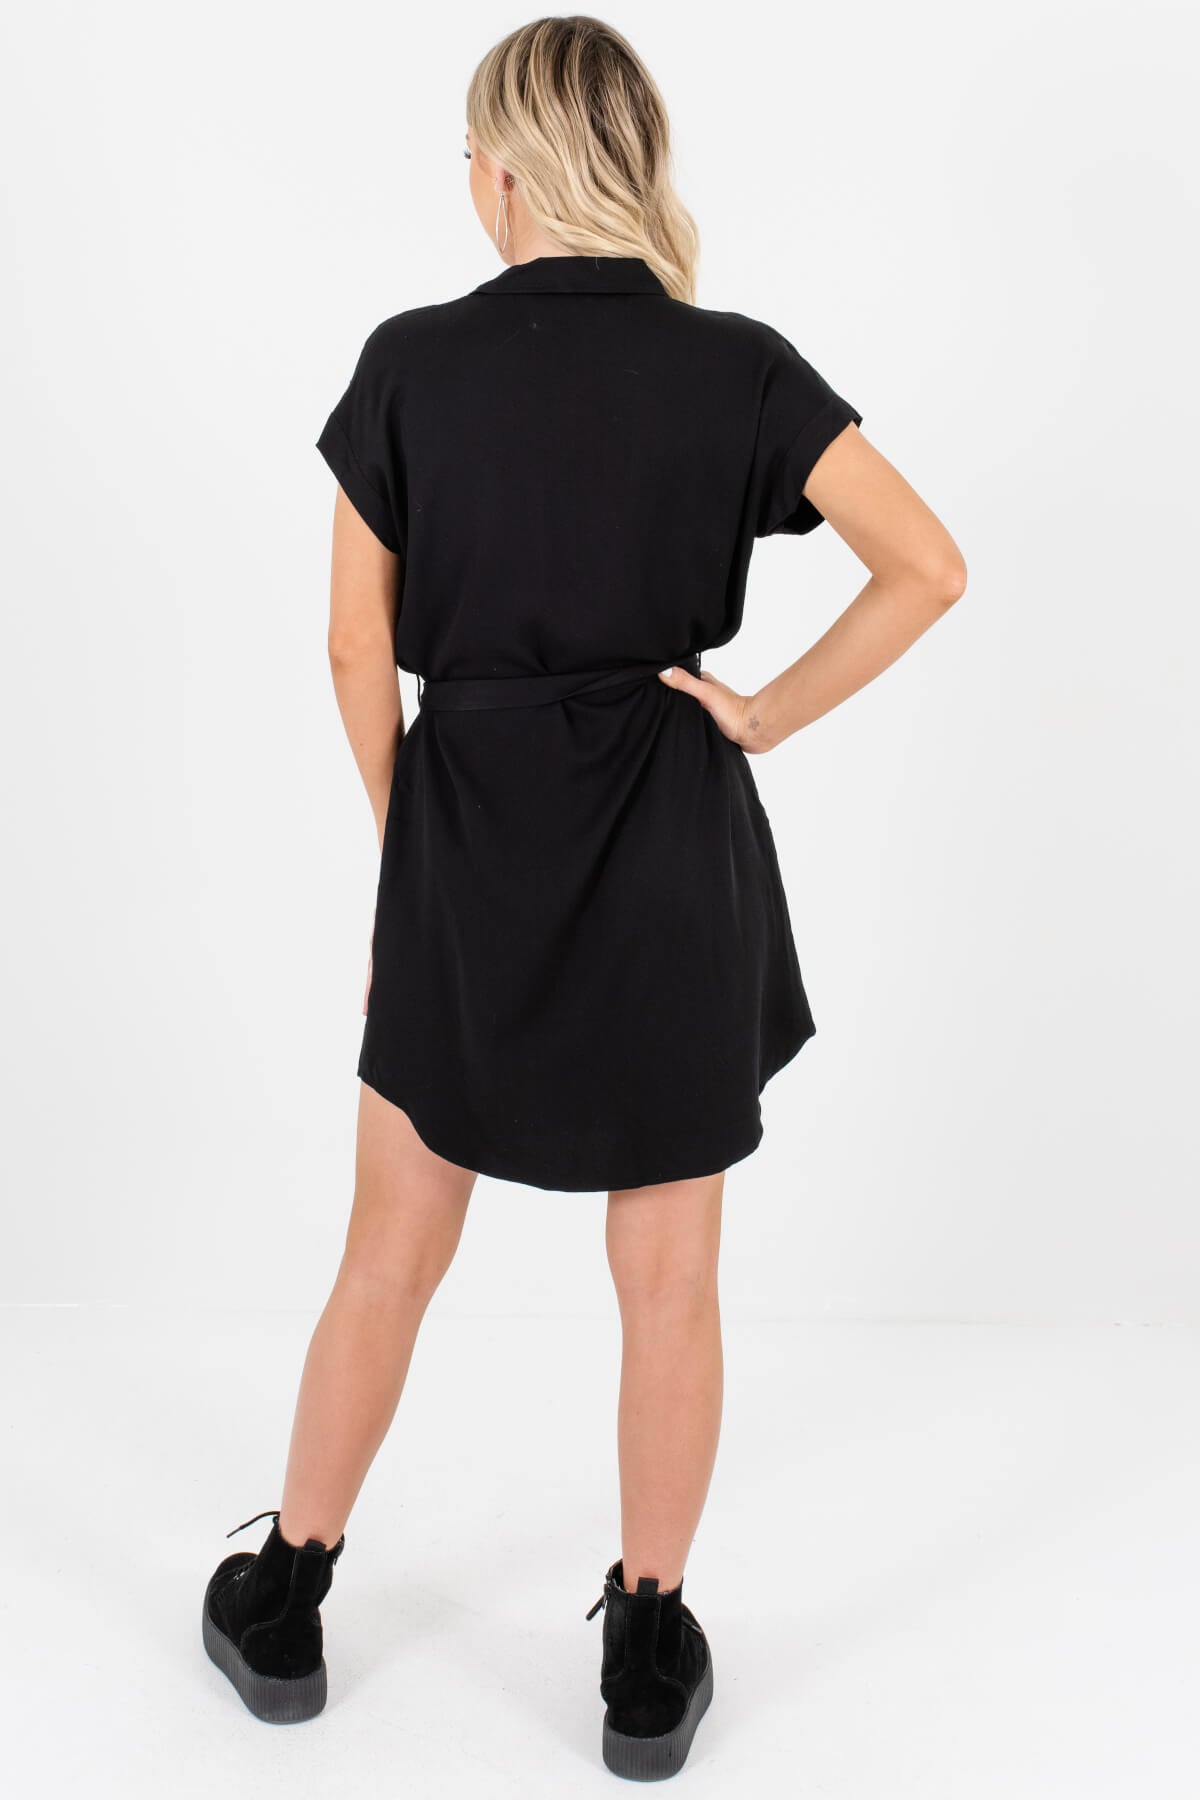 Black Button-Up Shirt Mini Dresses Affordable Boutique